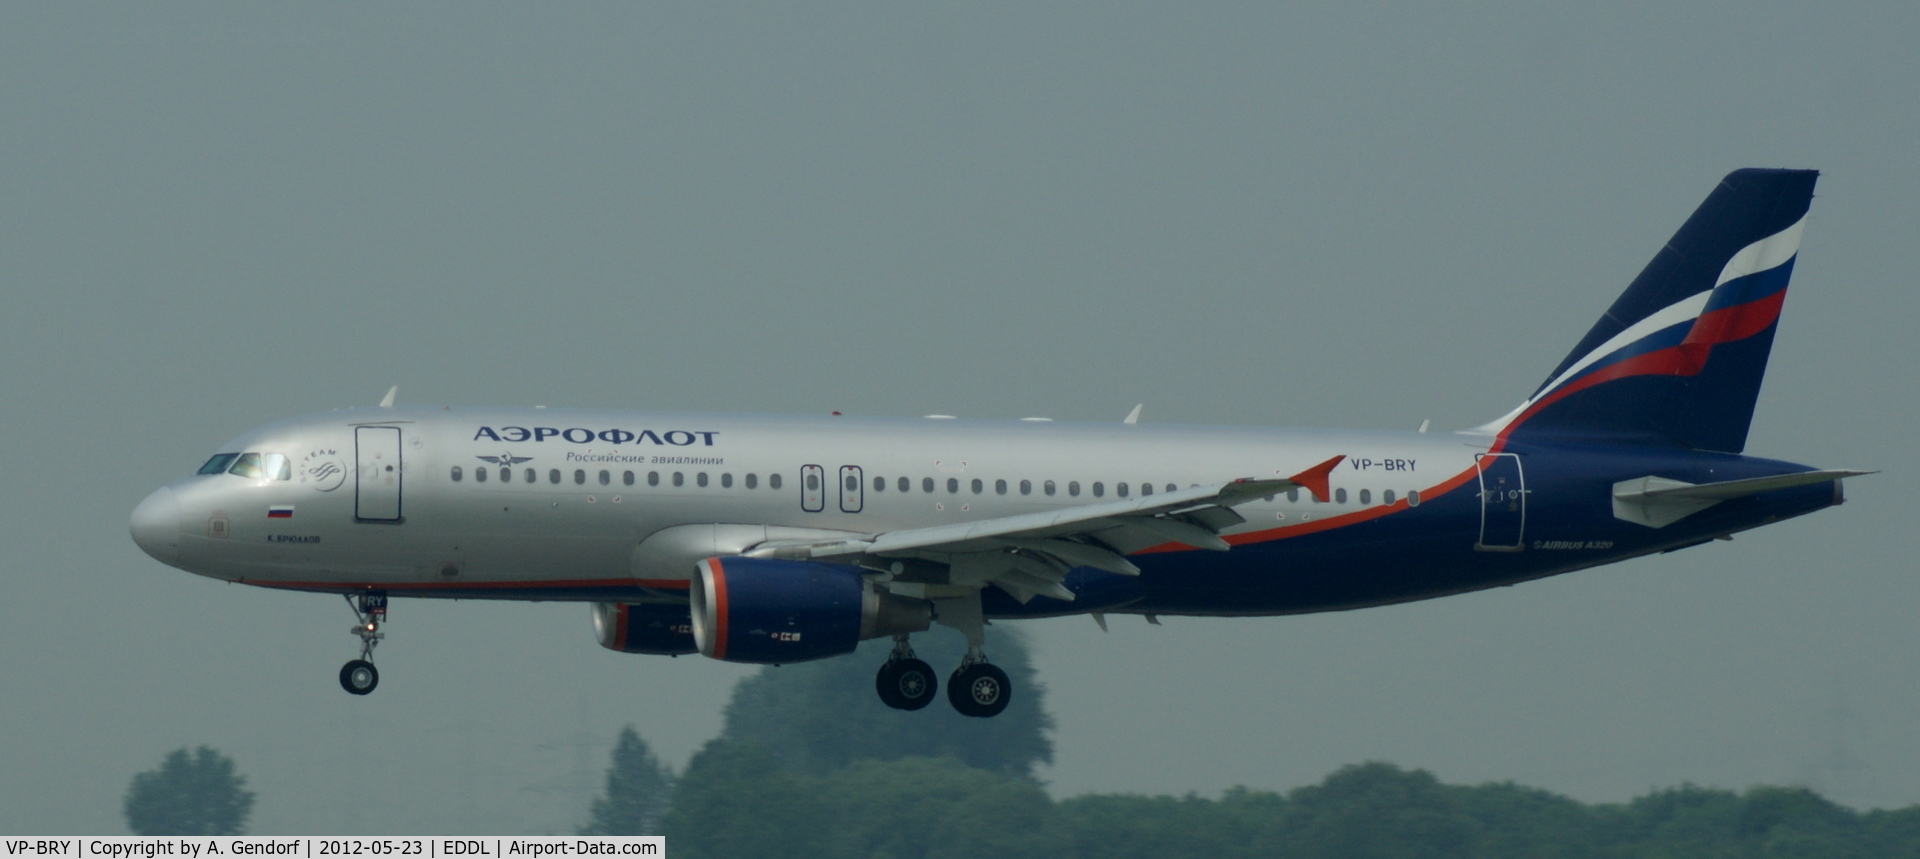 VP-BRY, 2007 Airbus A320-214 C/N 3052, Aeroflot, is here on finals at Düsseldorf Int´l (EDDL)